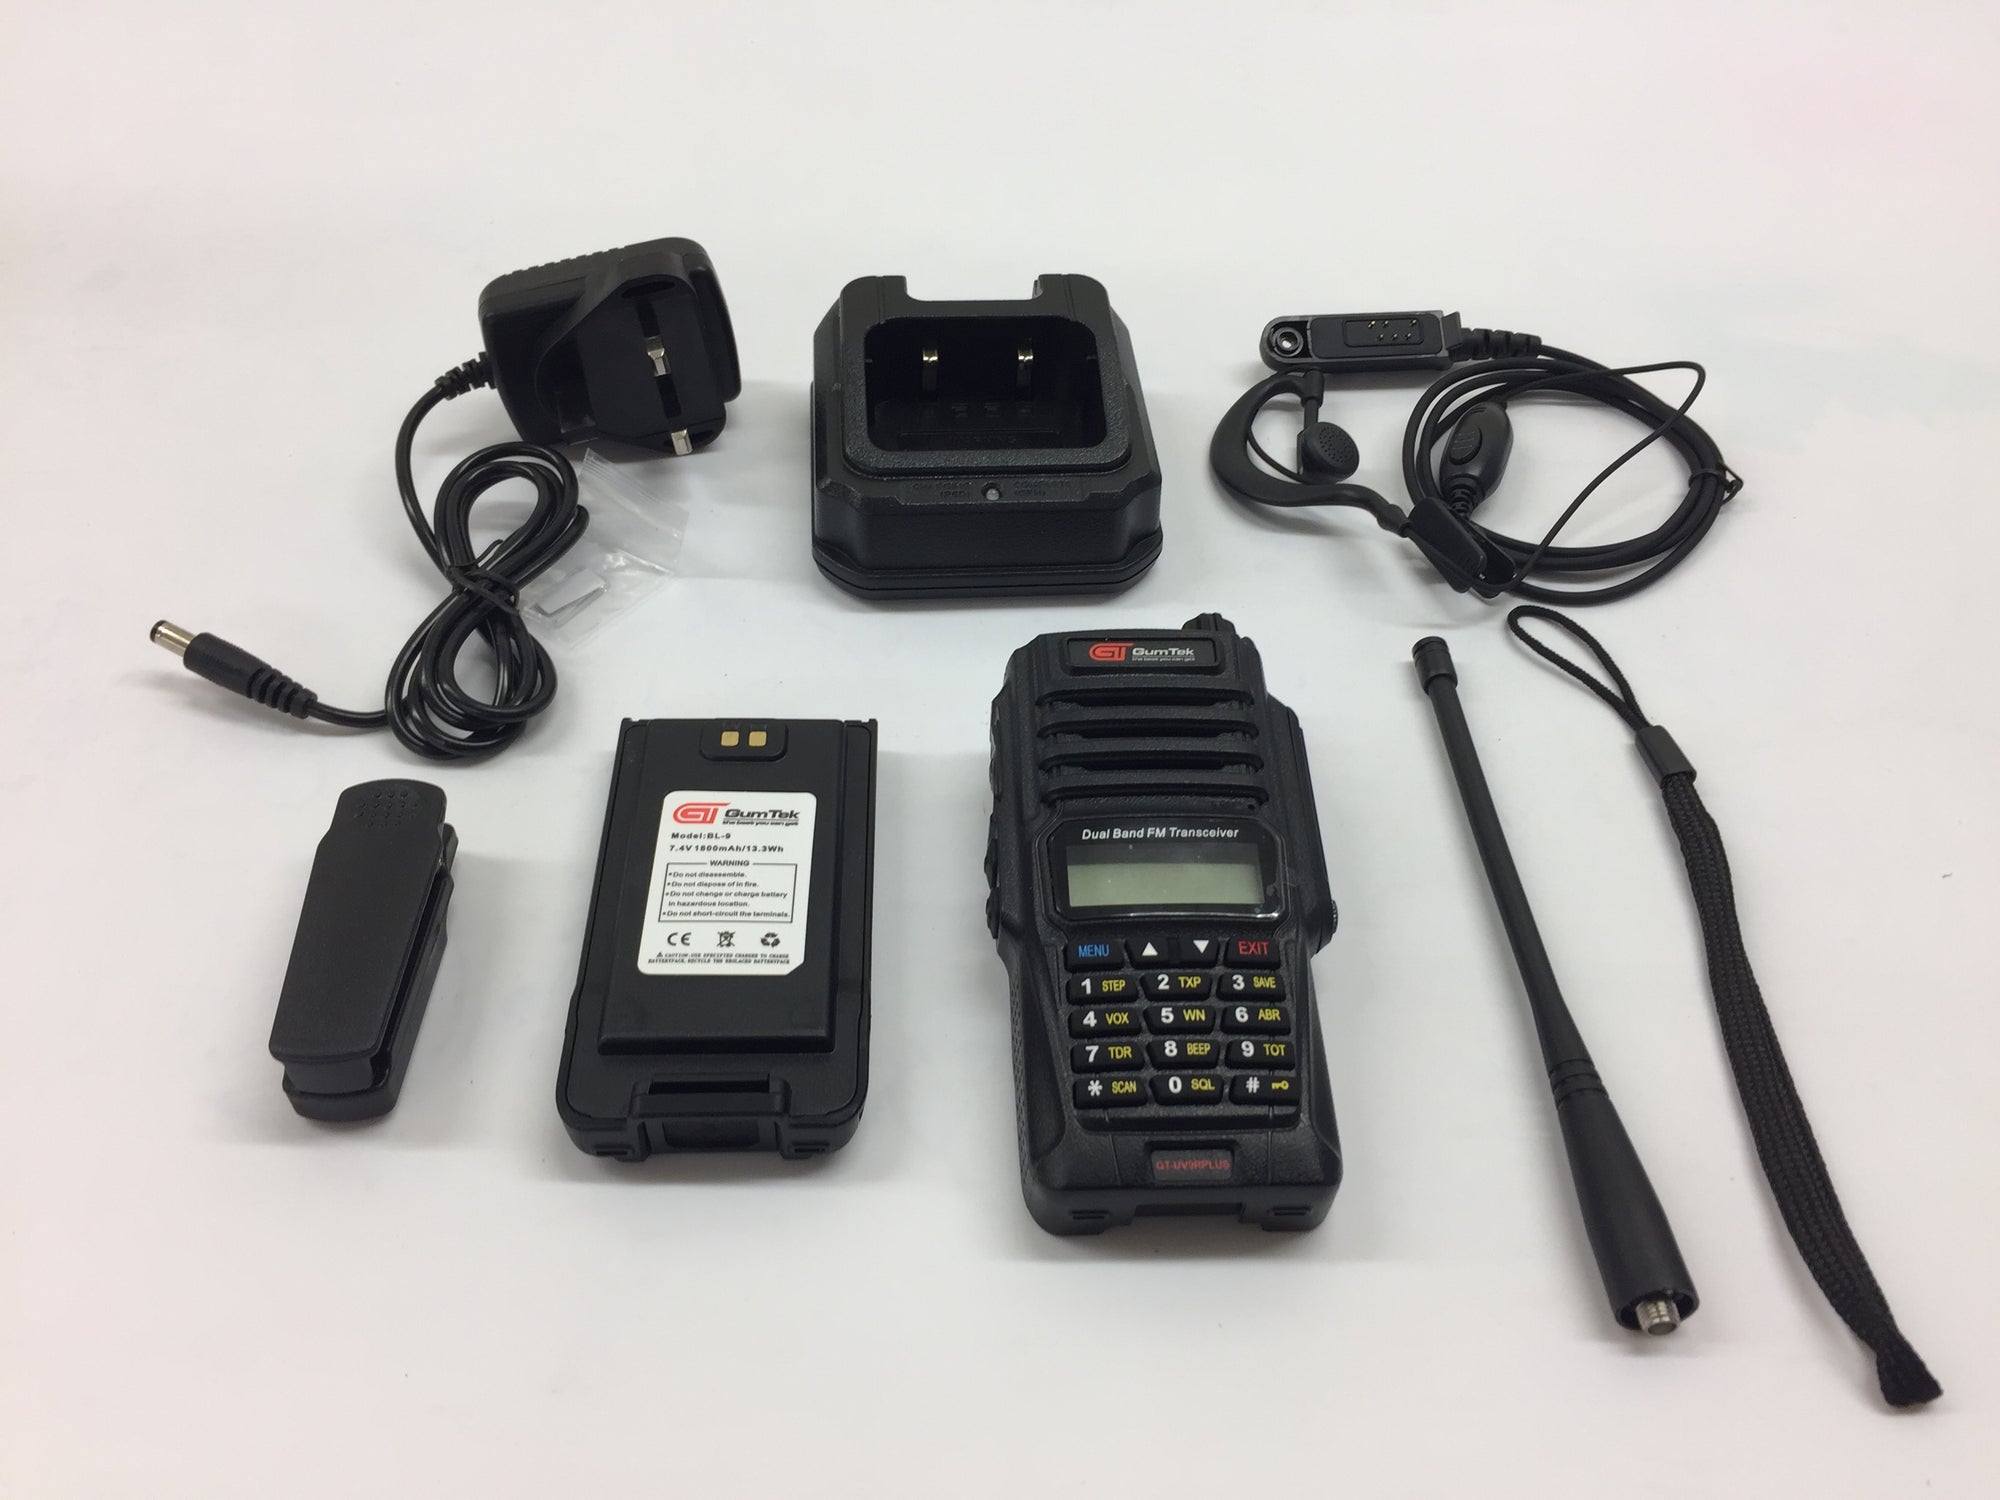 Gumtek UV-9R Plus IP67 Waterproof UHF/VHF Walkie Talkie Two Way Radio +Earpiece